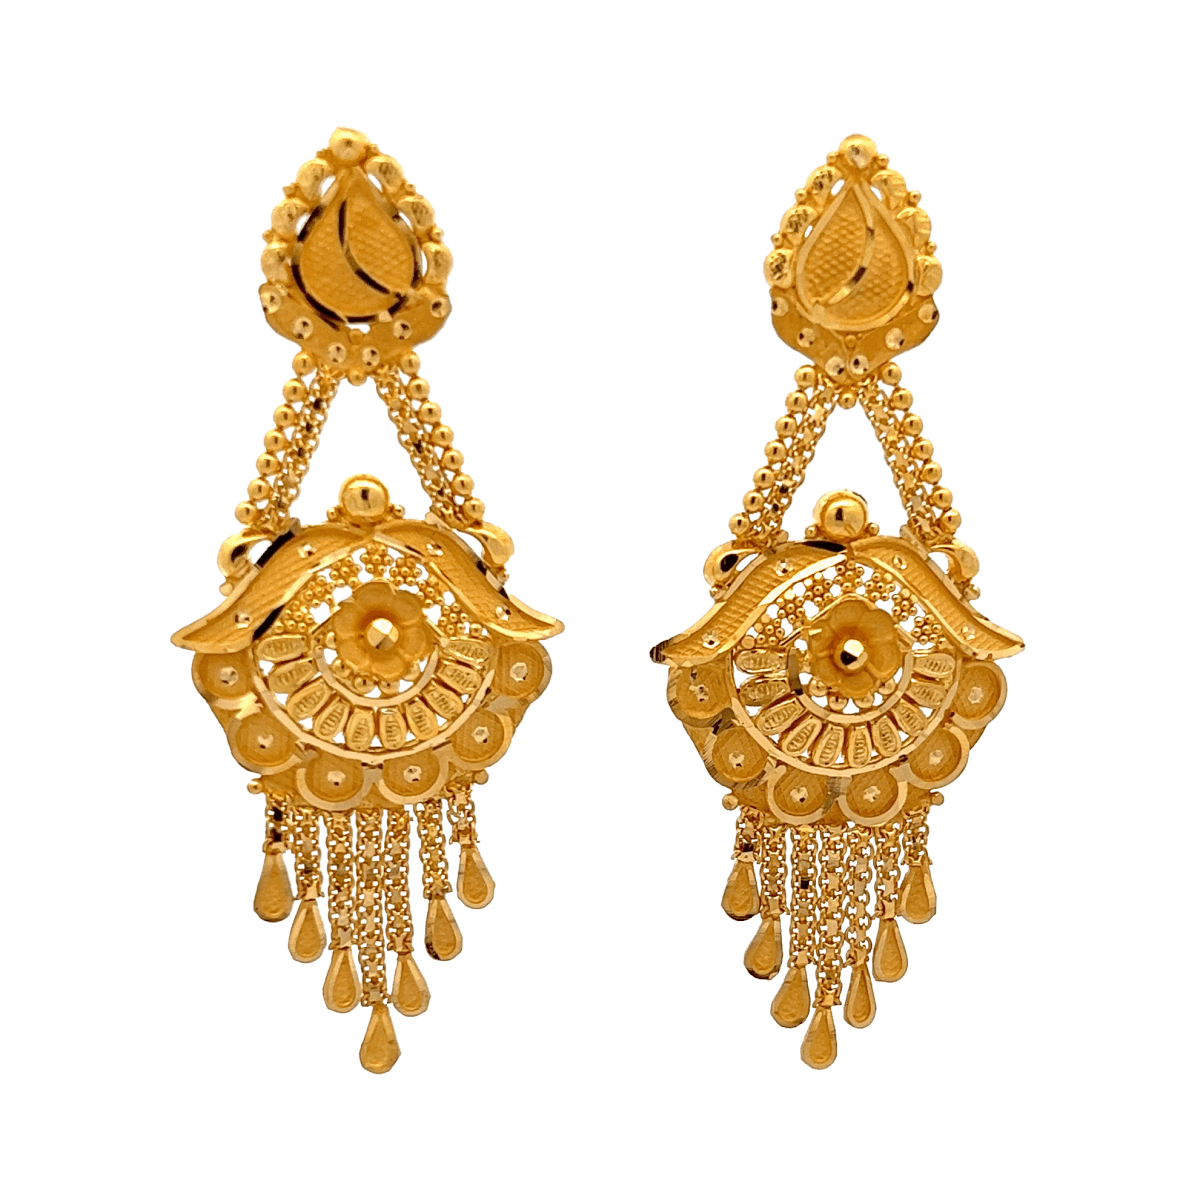 Gold Women's Earrings Designs 2023 // new light weight gold earrings designs  with weight & price - YouTube